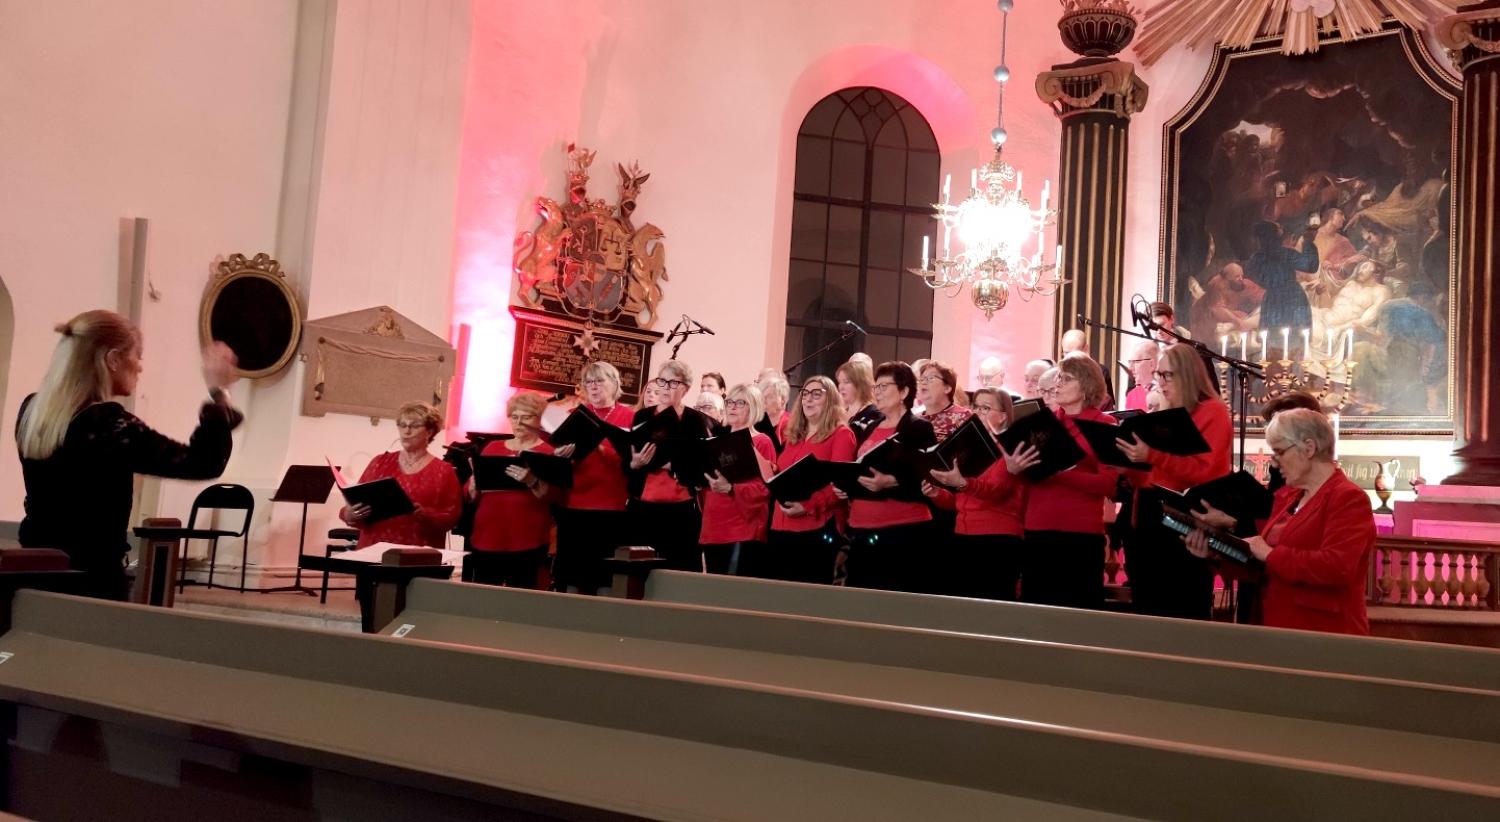 En grupp människor i röda skjortor sjunger i en kyrka.